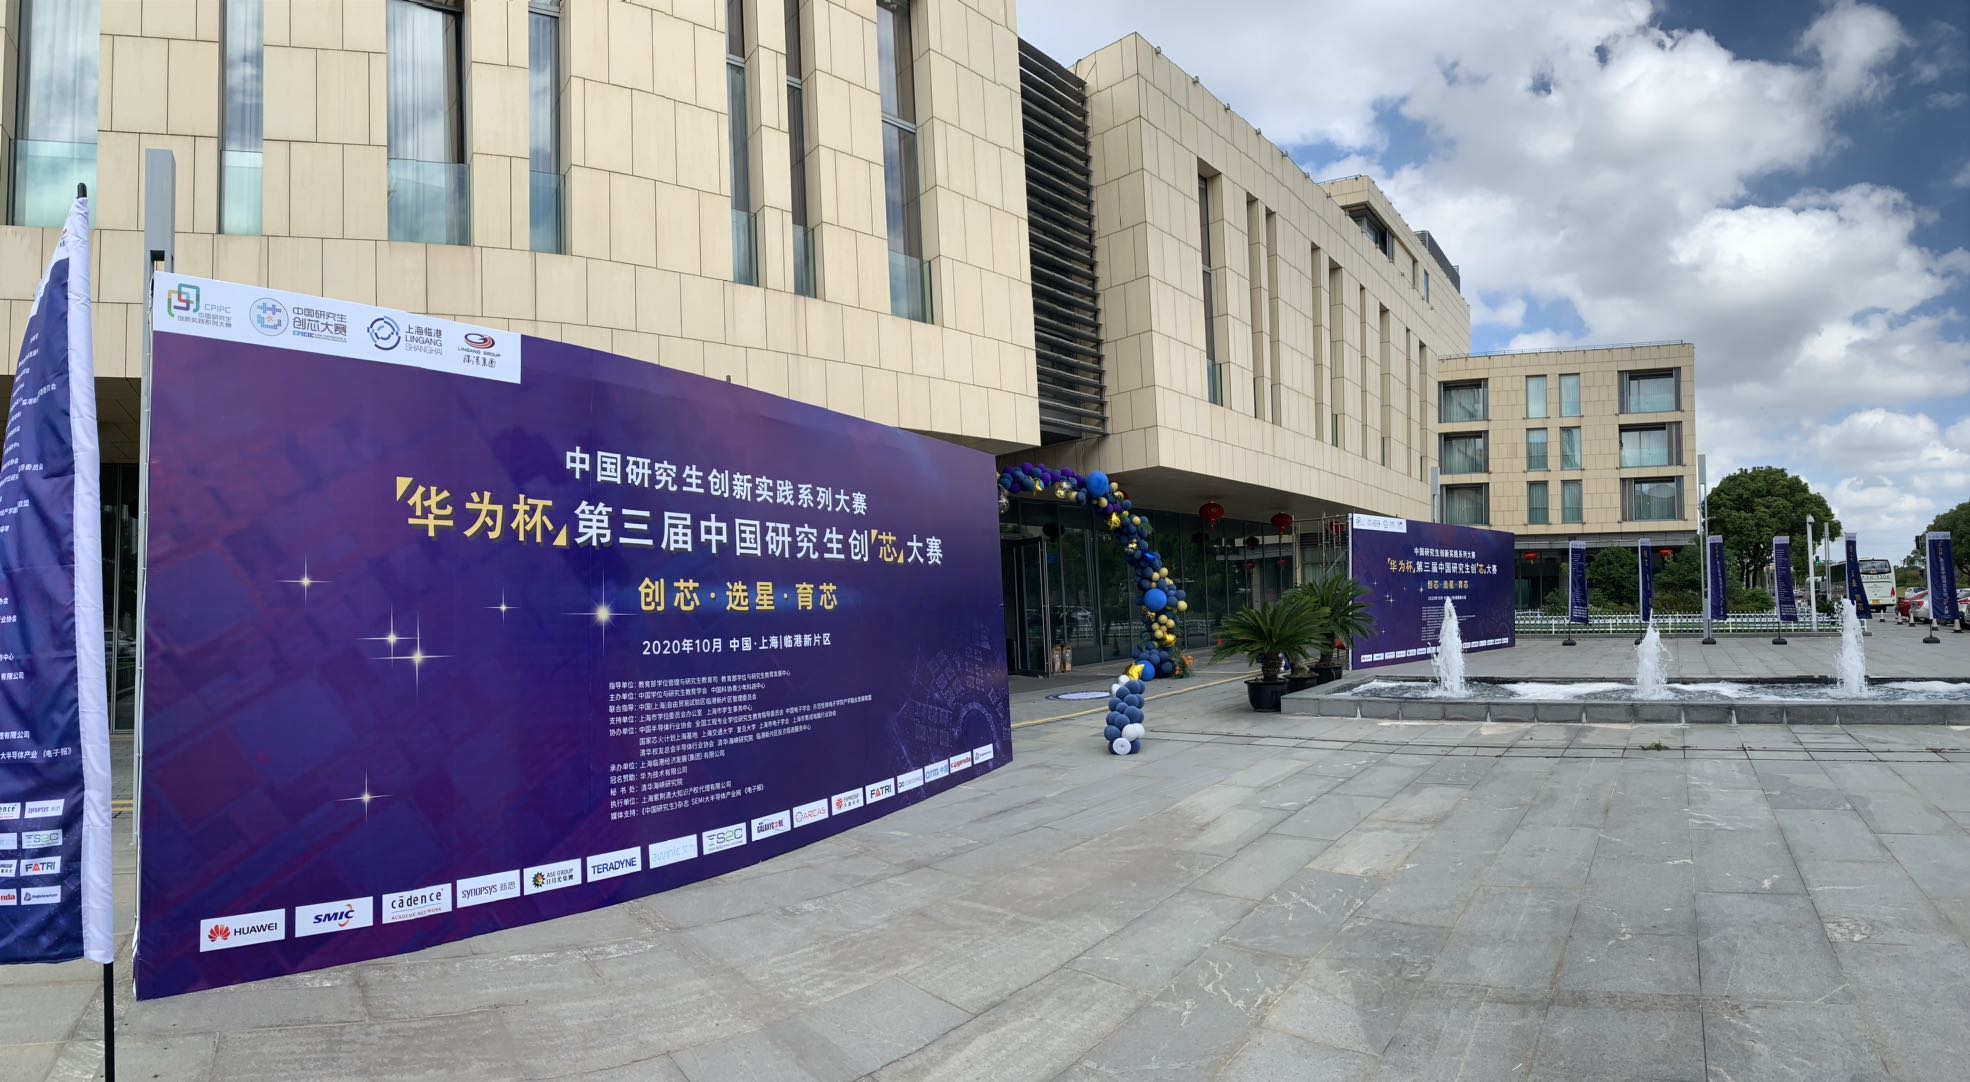 “華為杯”第三屆中國研究生創“芯”大賽總決賽在臨港新片區開幕